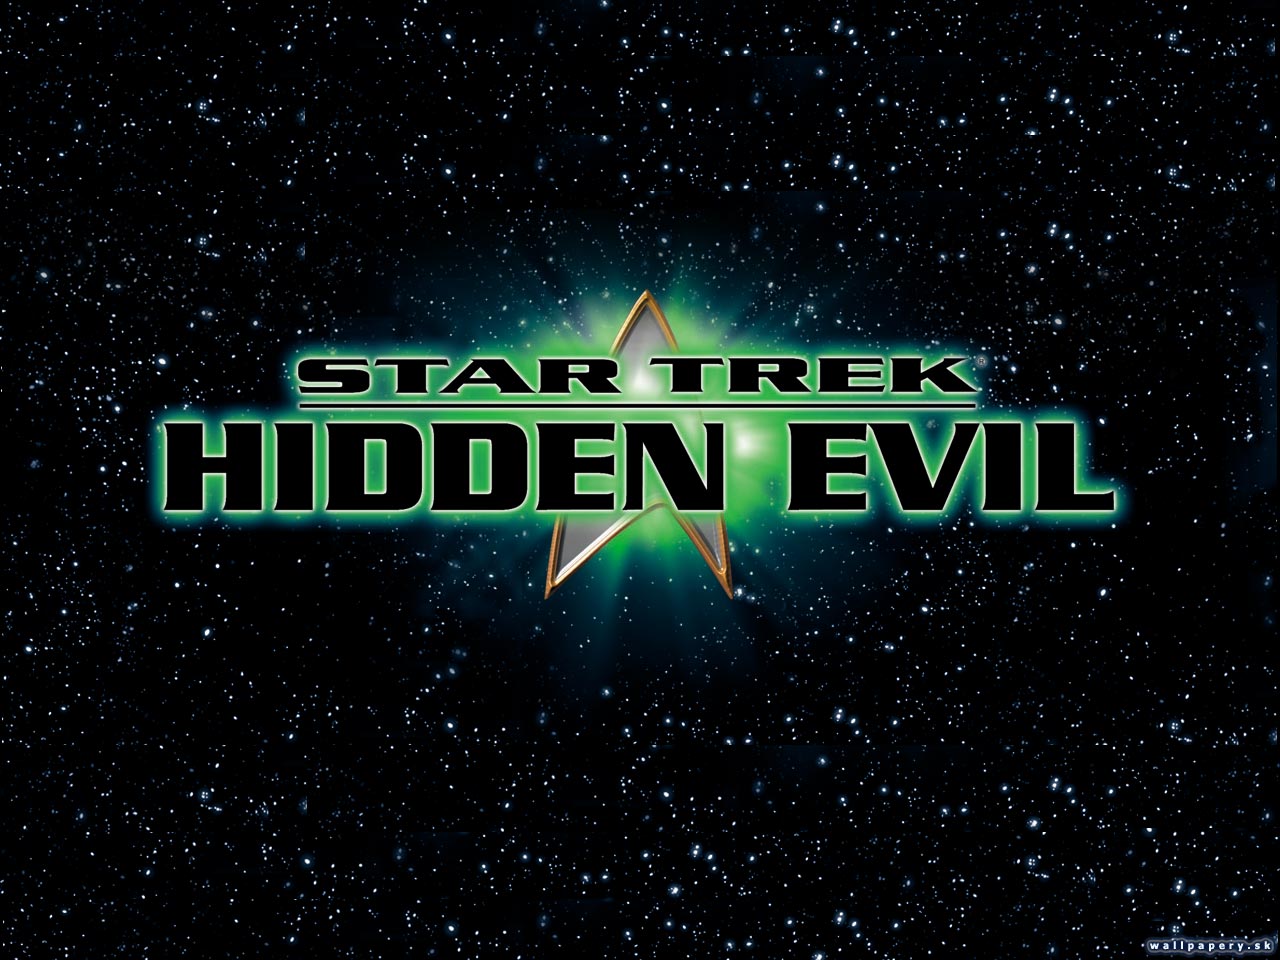 Star Trek: Hidden Evil - wallpaper 1